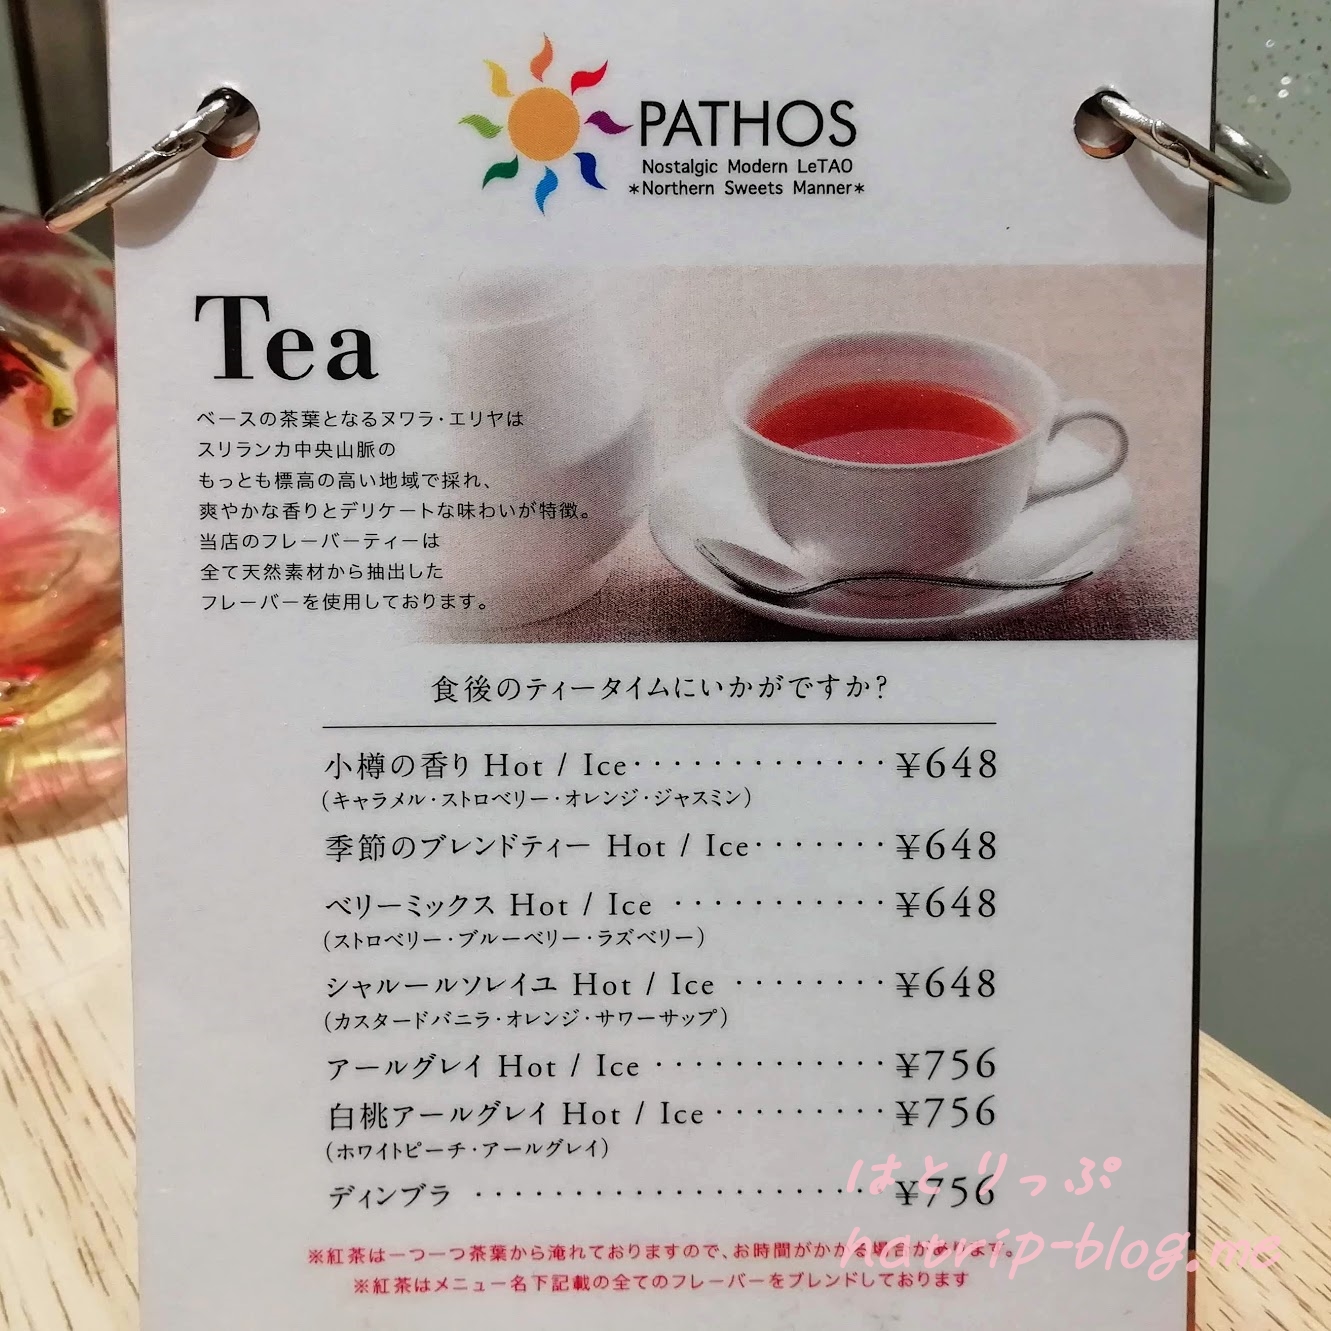 北海道 小樽 ルタオ パトス カフェ メニュー 紅茶